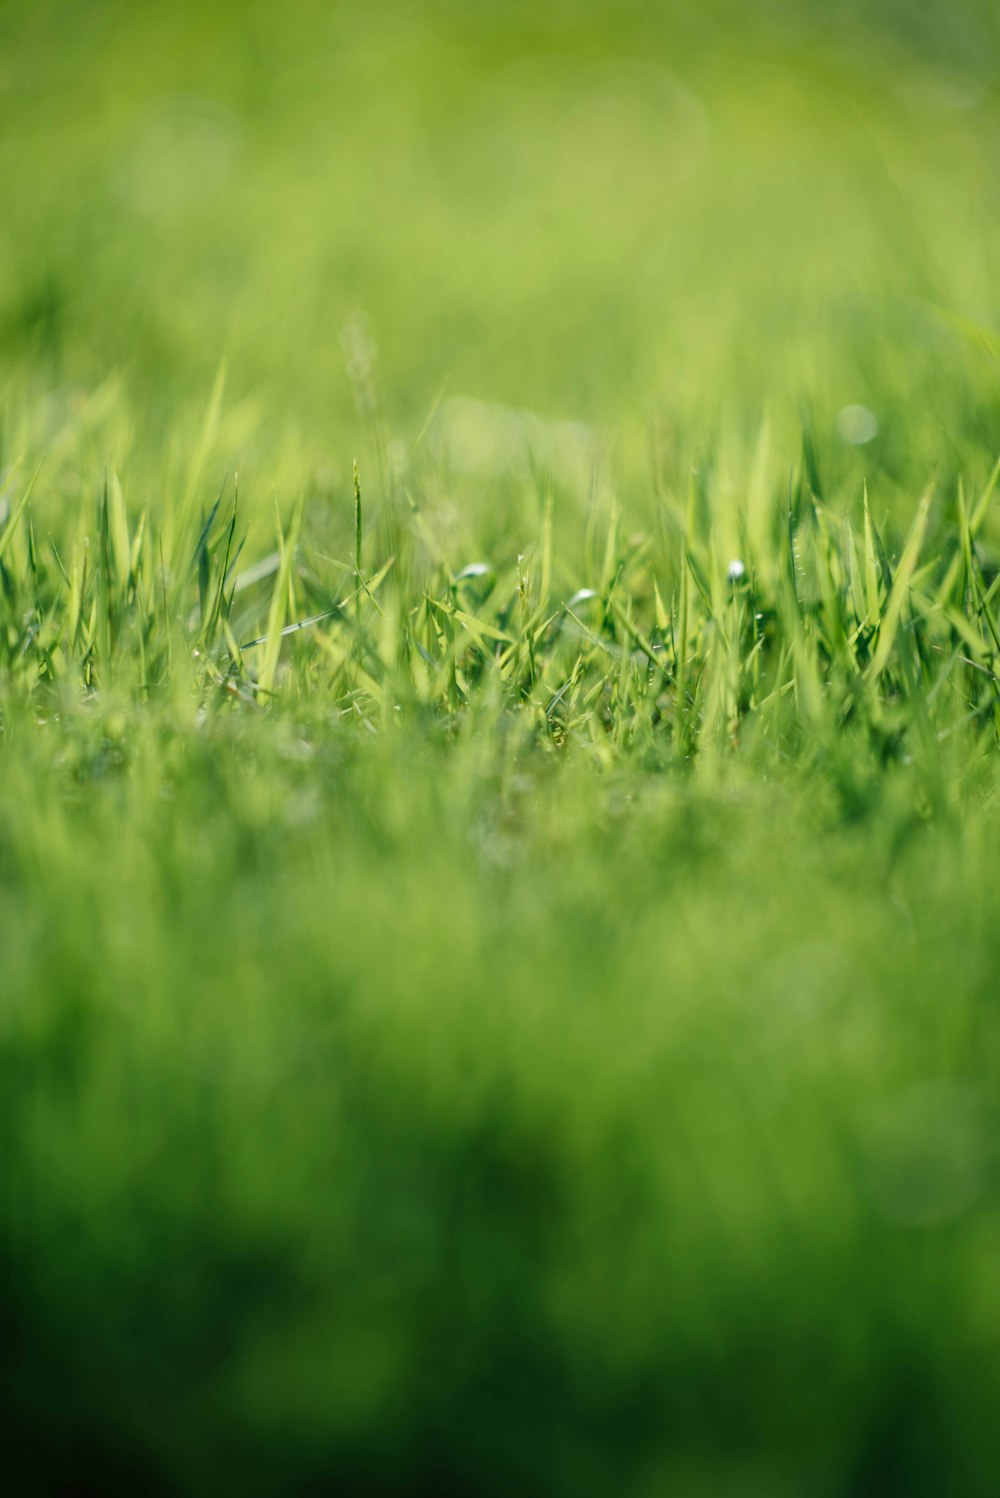 tilt-shift photography of green grass